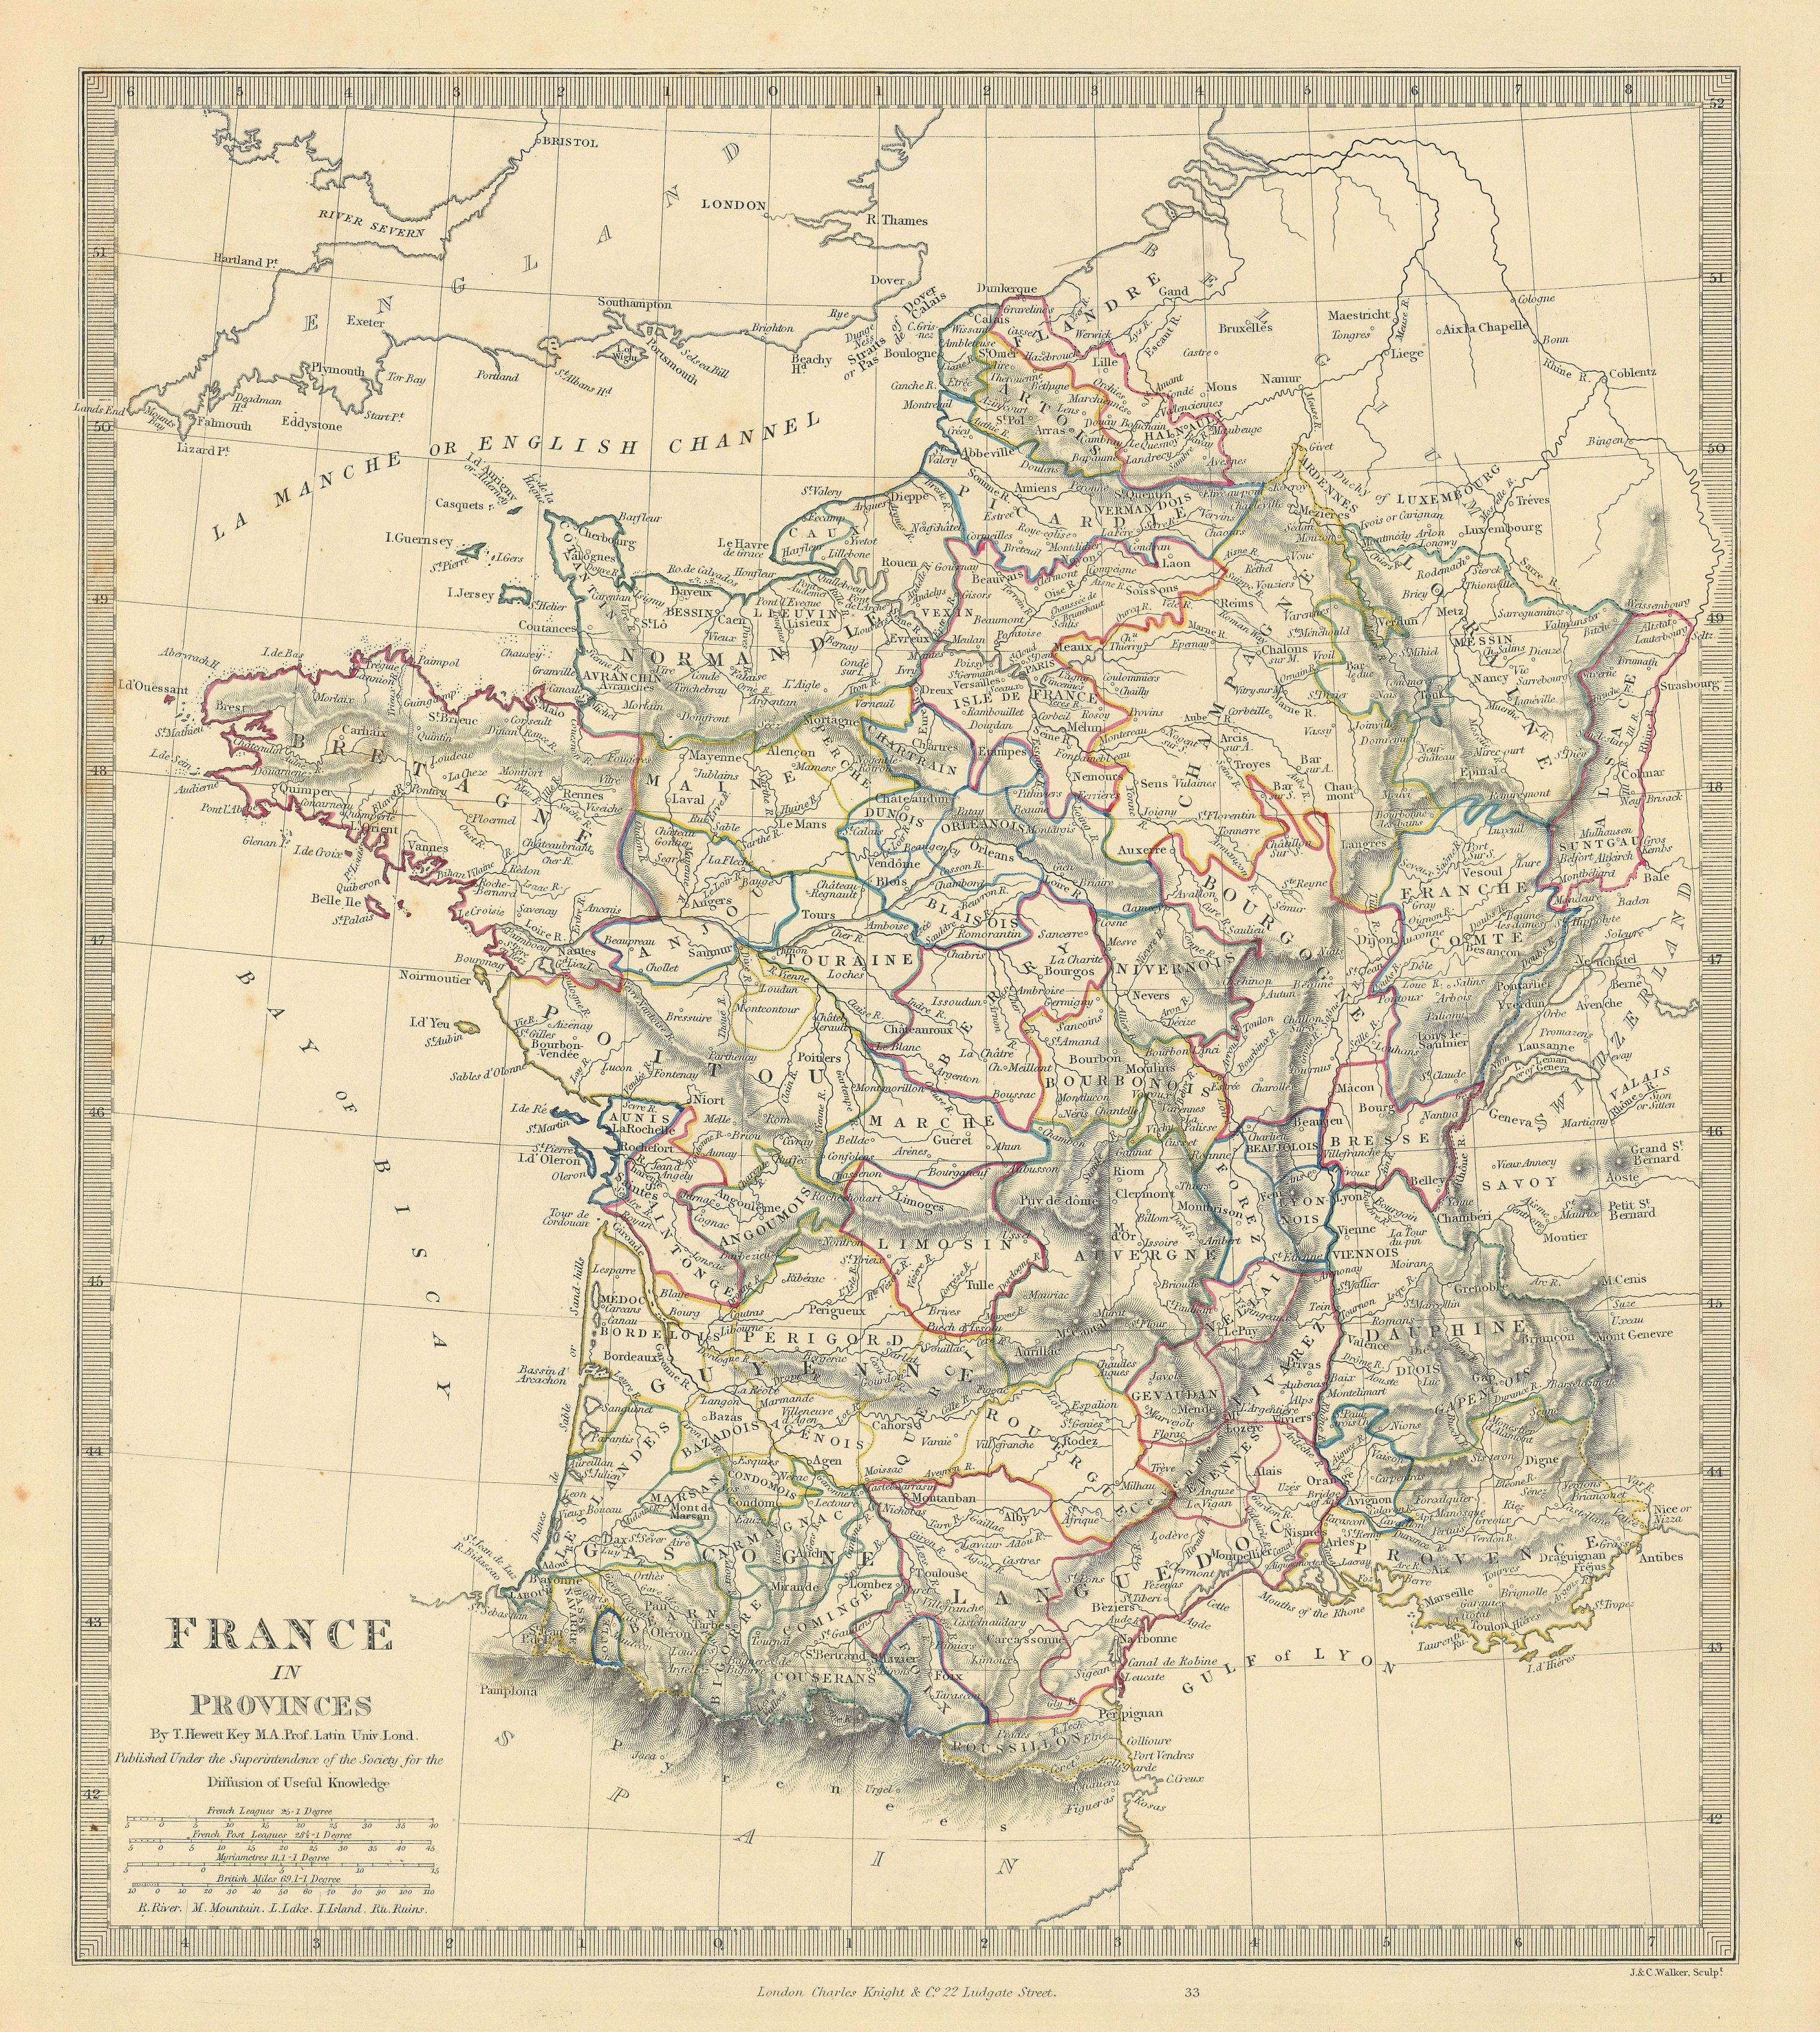 FRANCE IN PROVINCES. Shows provinces <1790. Original hand colour. SDUK 1845 map